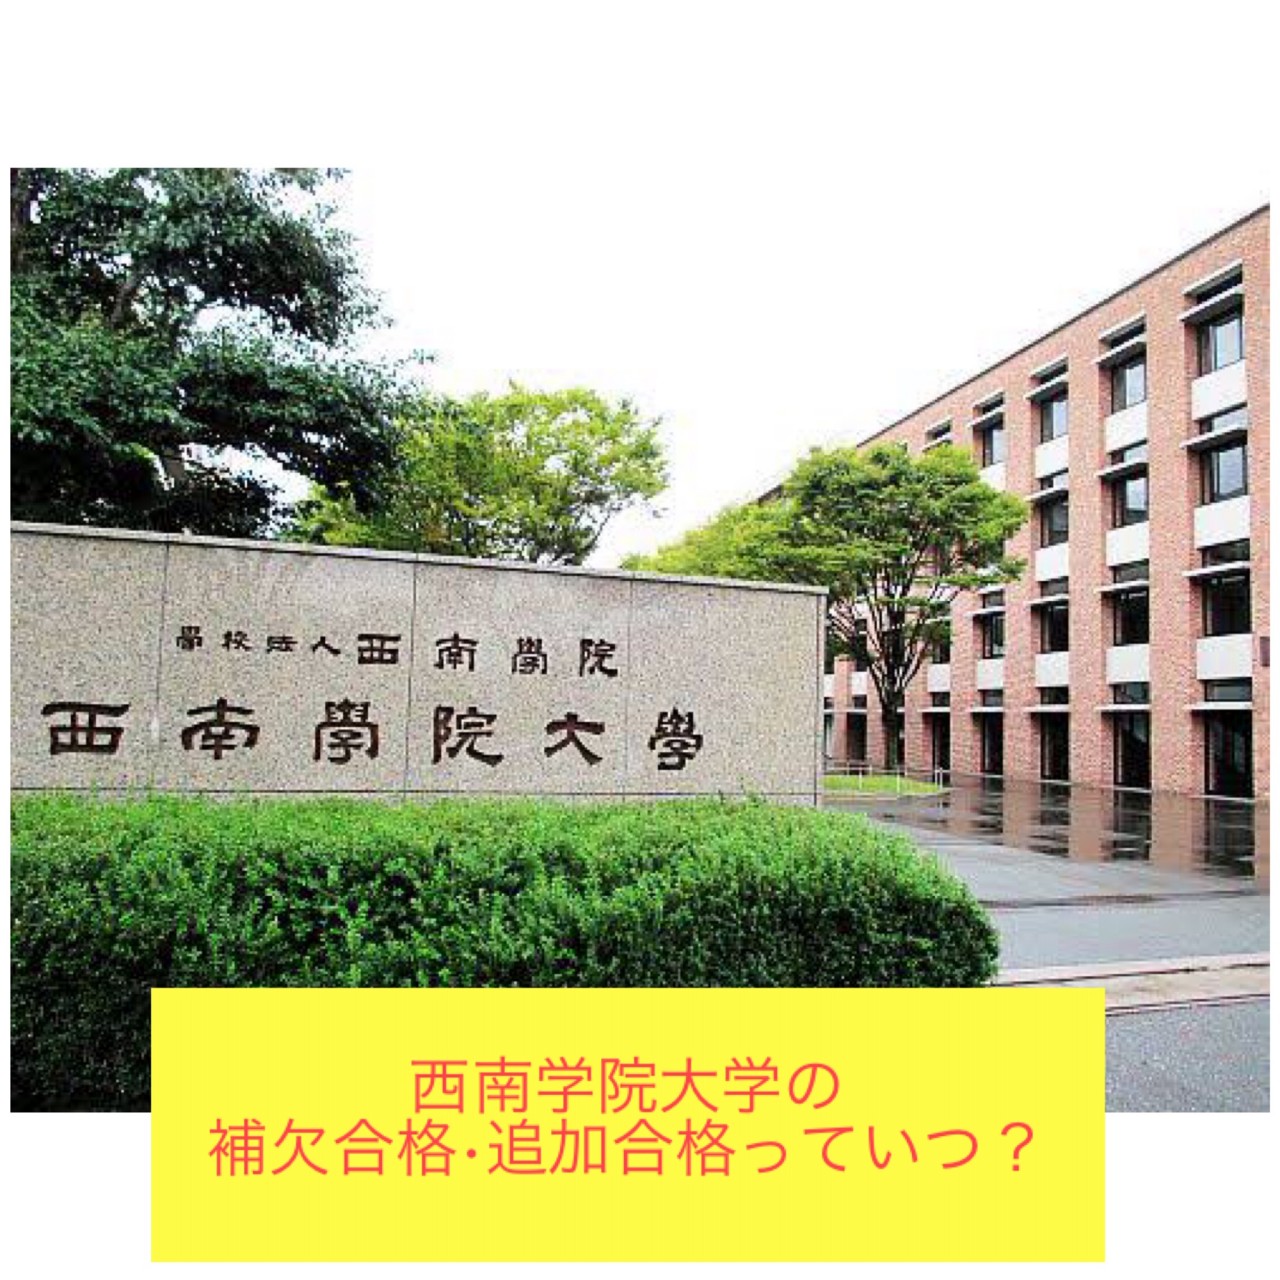 青山 学院 大学 追加 合格